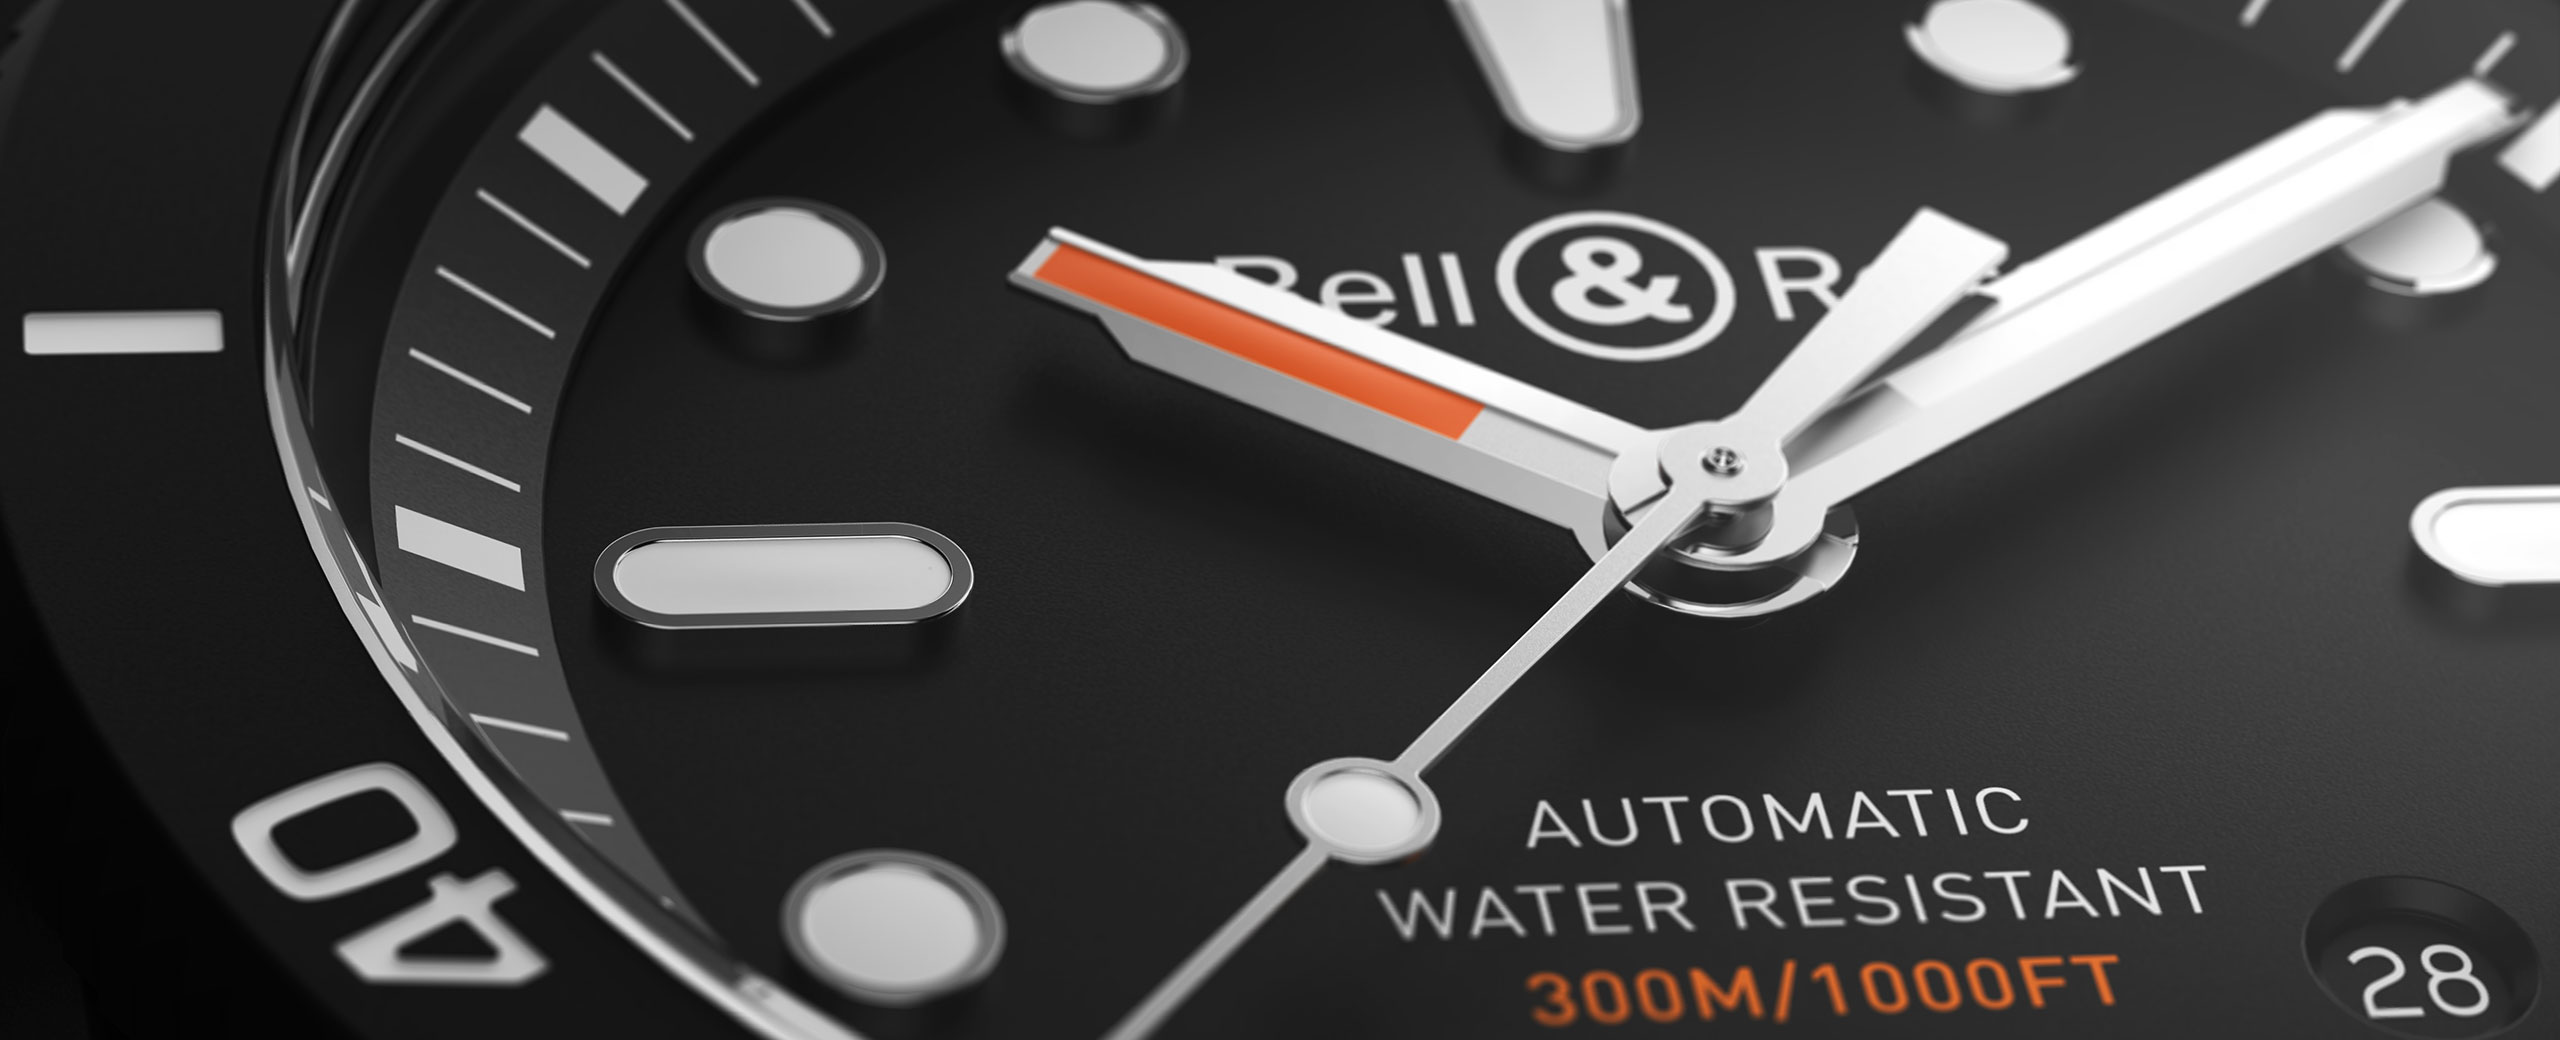 Breitling Emergeny Watch Replica